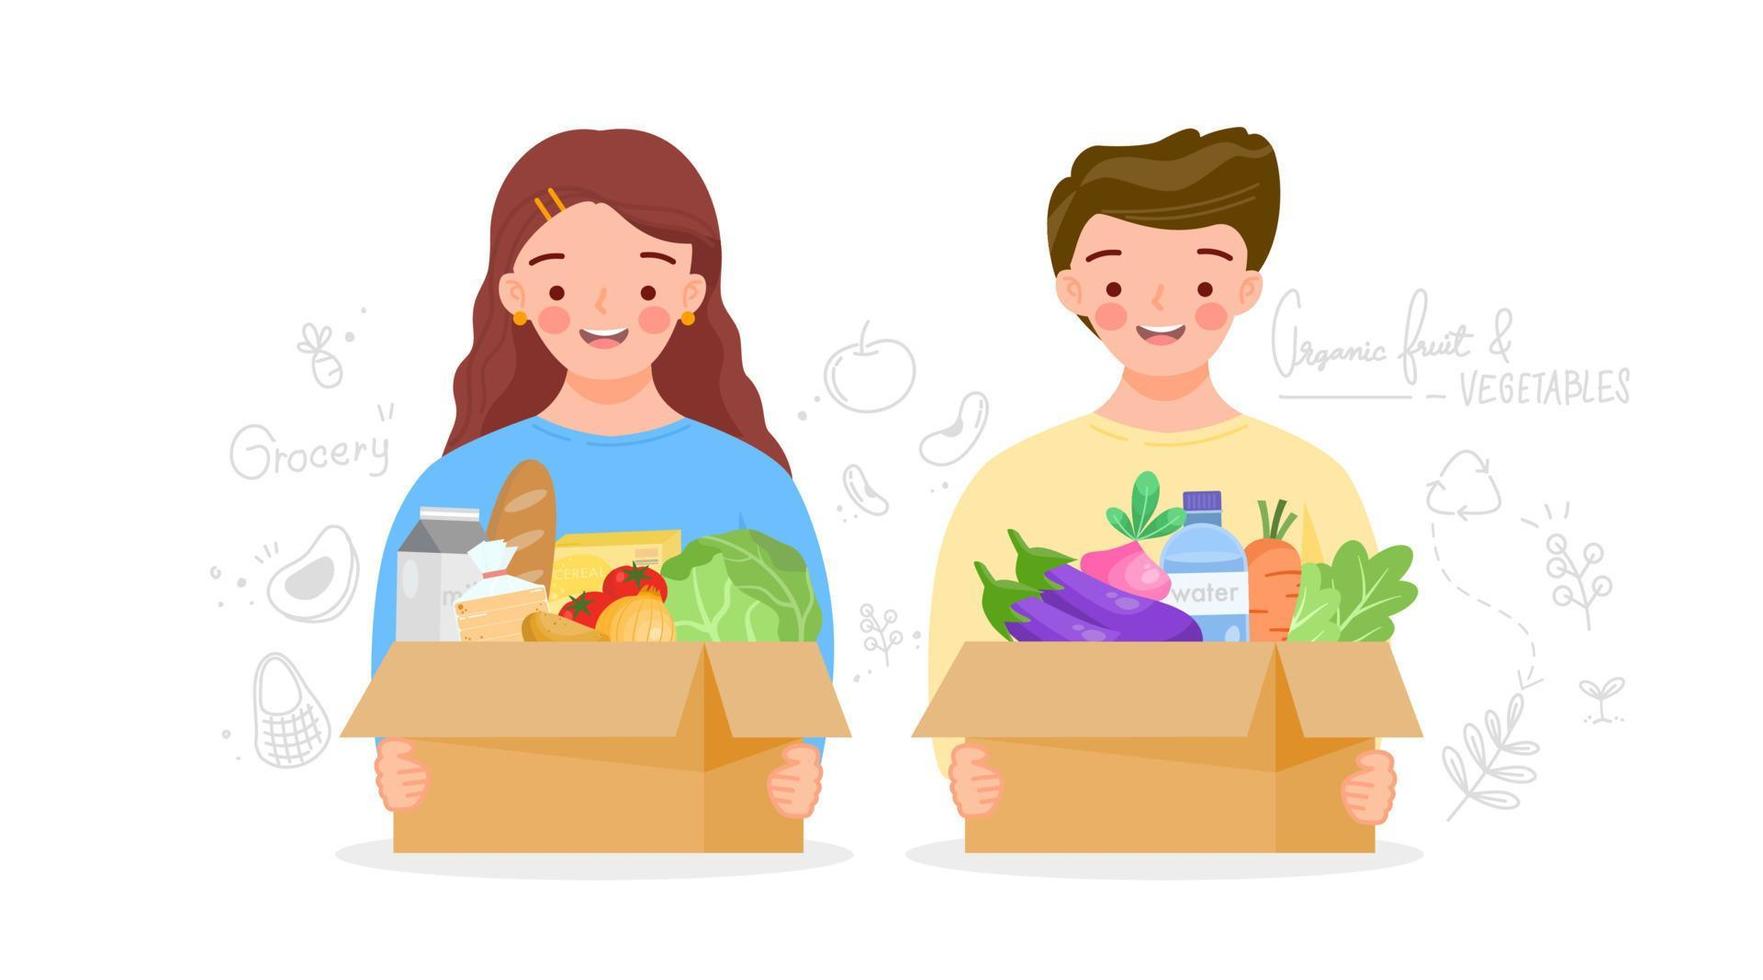 niño y niña sosteniendo una caja de cartón reutilizada con un tendero verde. caja reutilizable de frutas, verduras, leche, pan. productos alimenticios en paquete ecológico. productos orgánicos de la granja. ilustración vectorial plana. vector